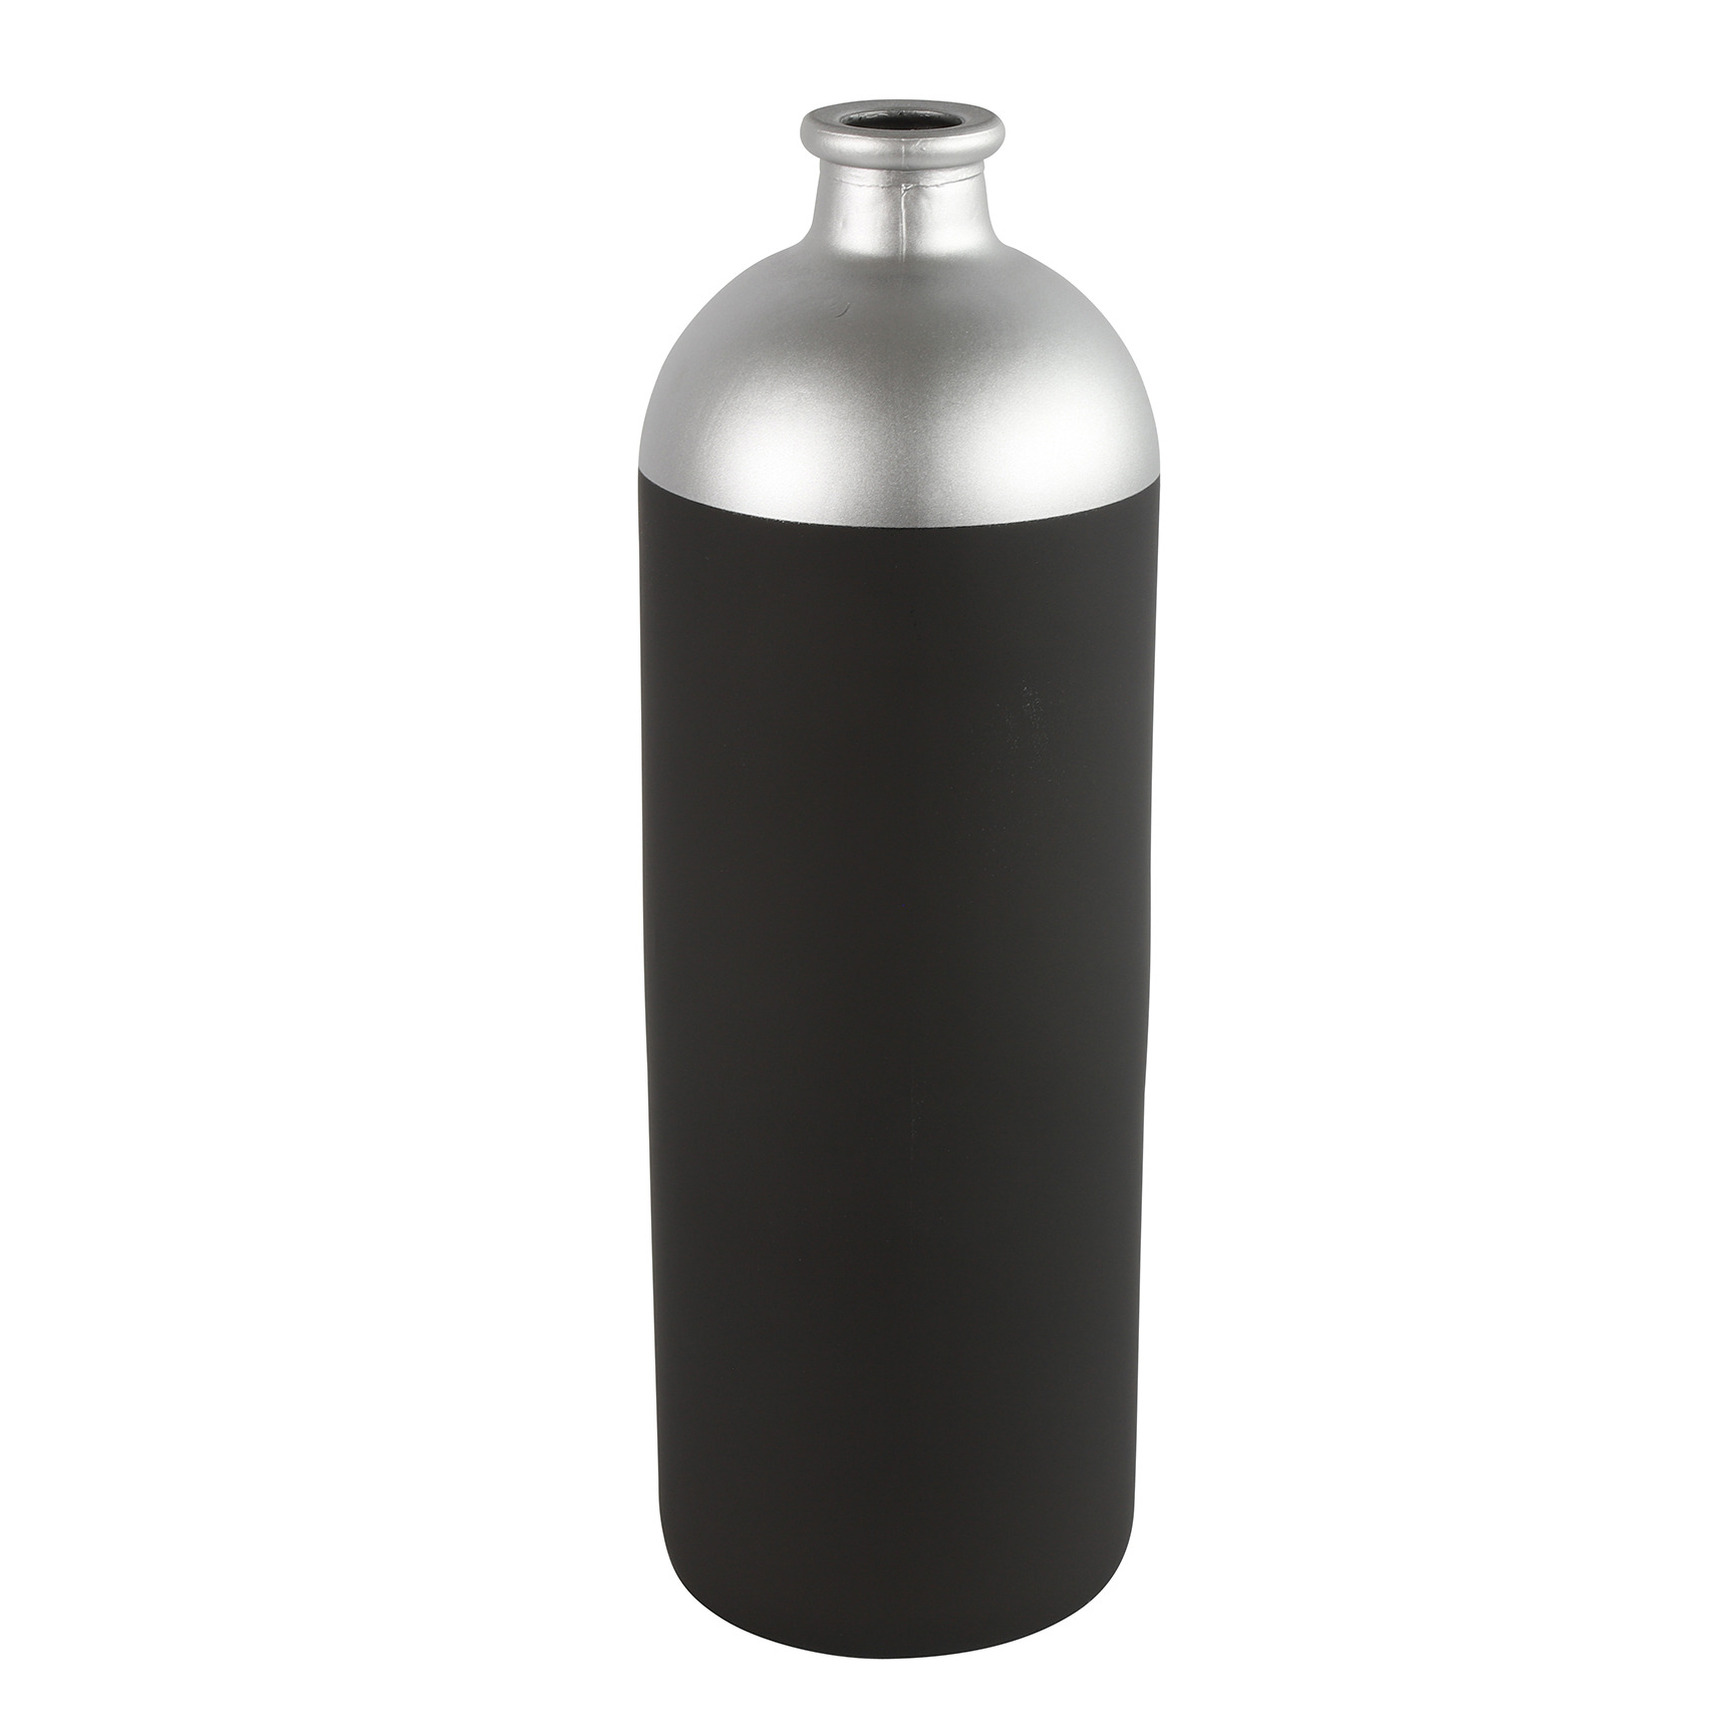 Countryfield Bloemen-deco vaas zwart-zilver glas fles D13 x H41 cm